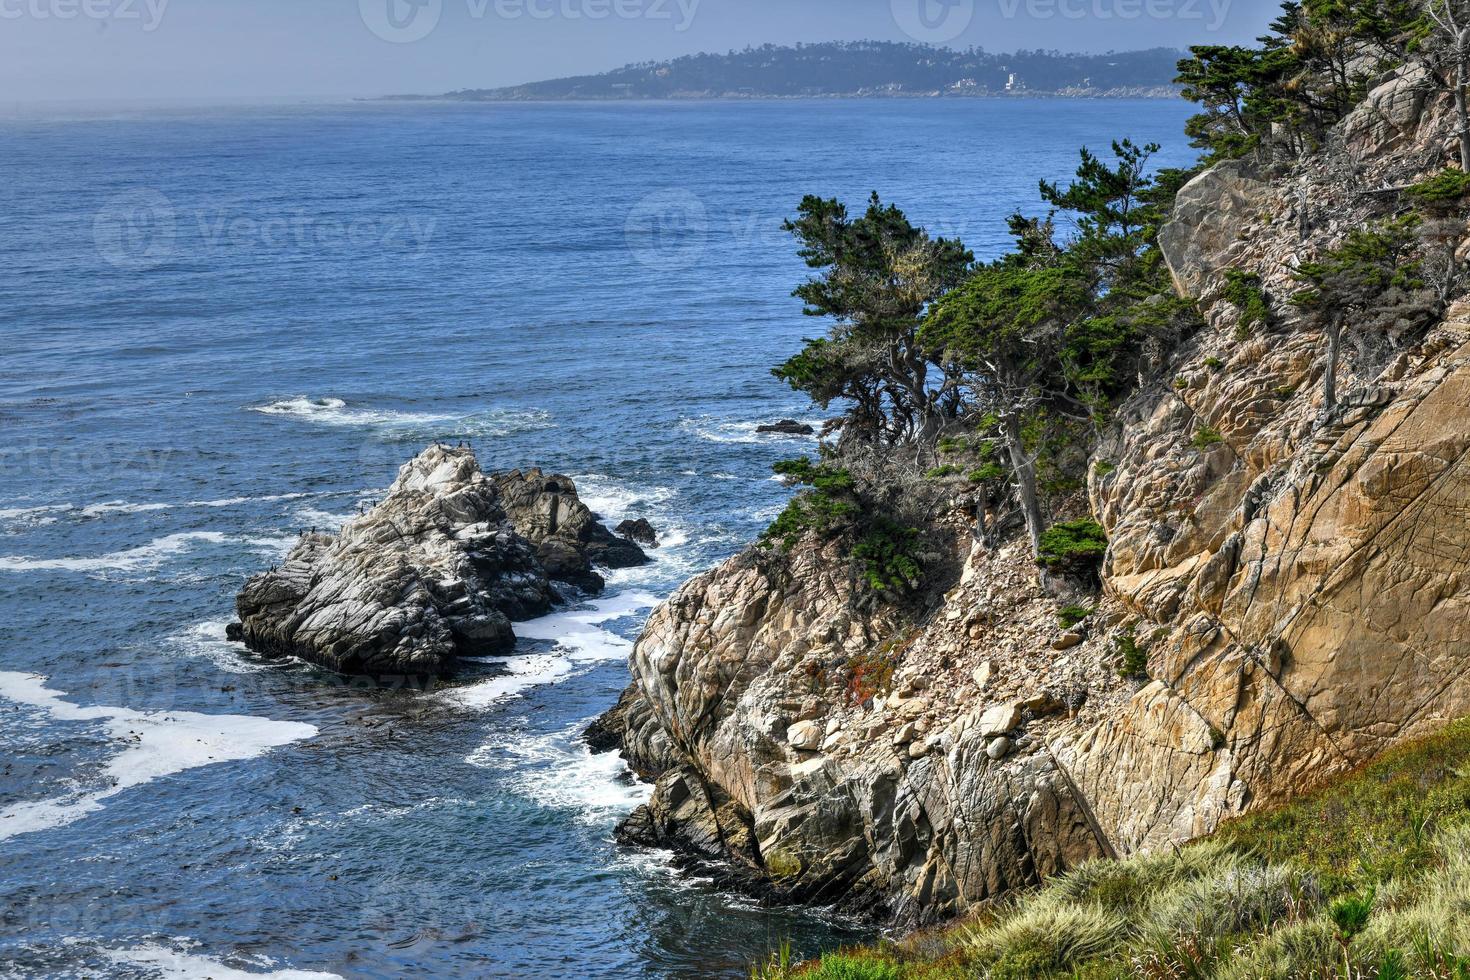 reserva natural do estado de point lobos ao sul de carmel-by-the-sea, califórnia, estados unidos, e no extremo norte da grande costa sul do oceano pacífico foto